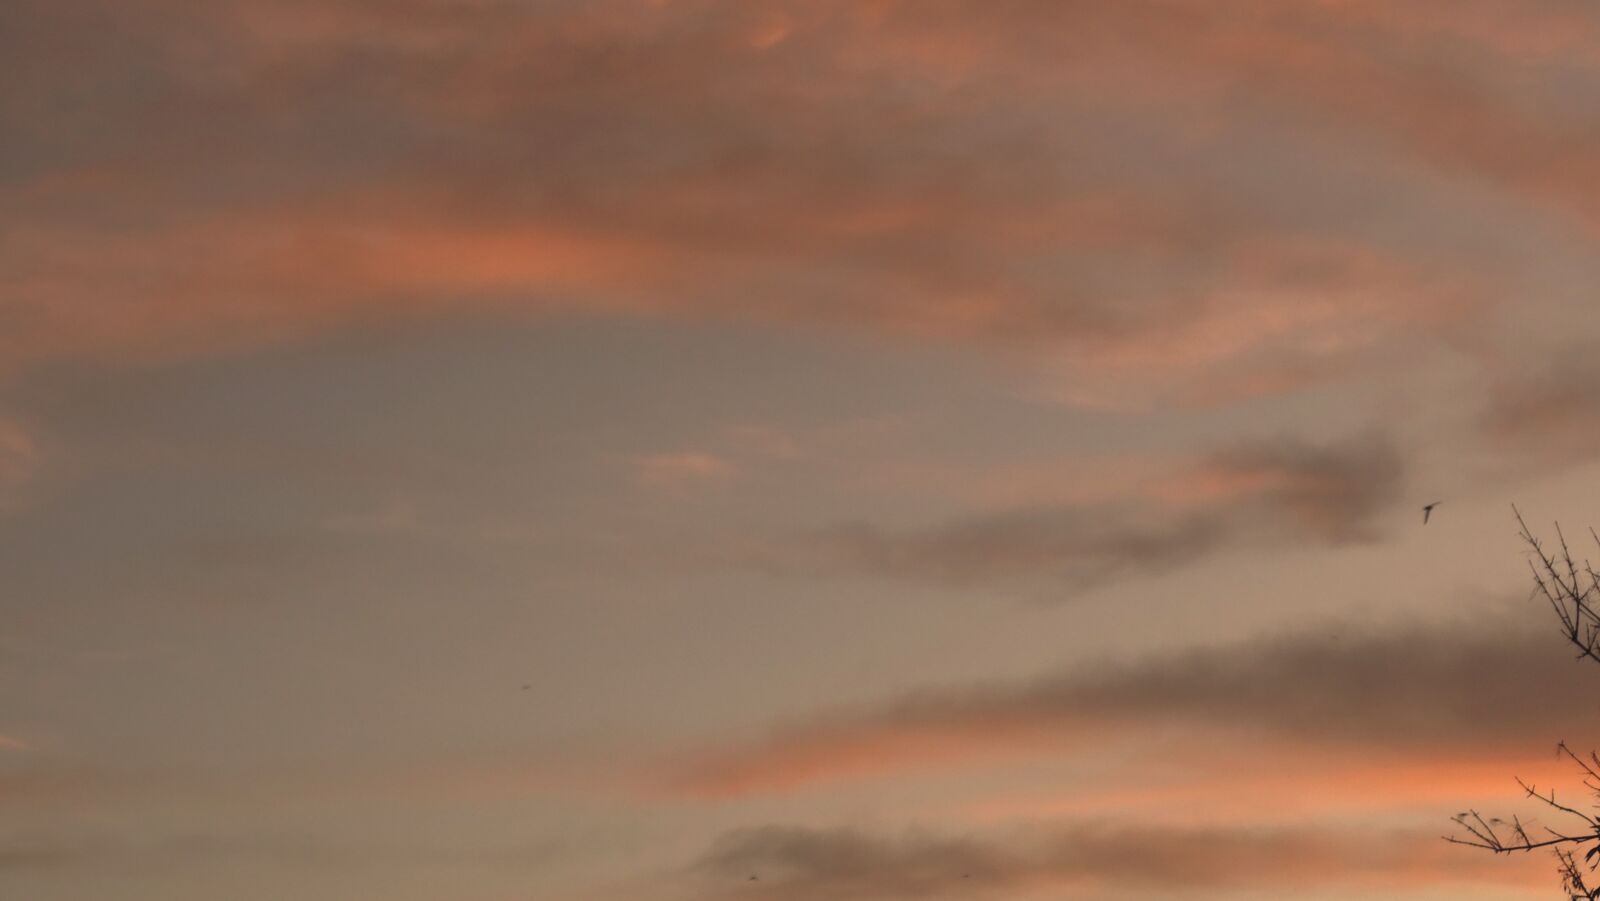 Sony DSC-HX400 sample photo. Sky, space, sunset photography